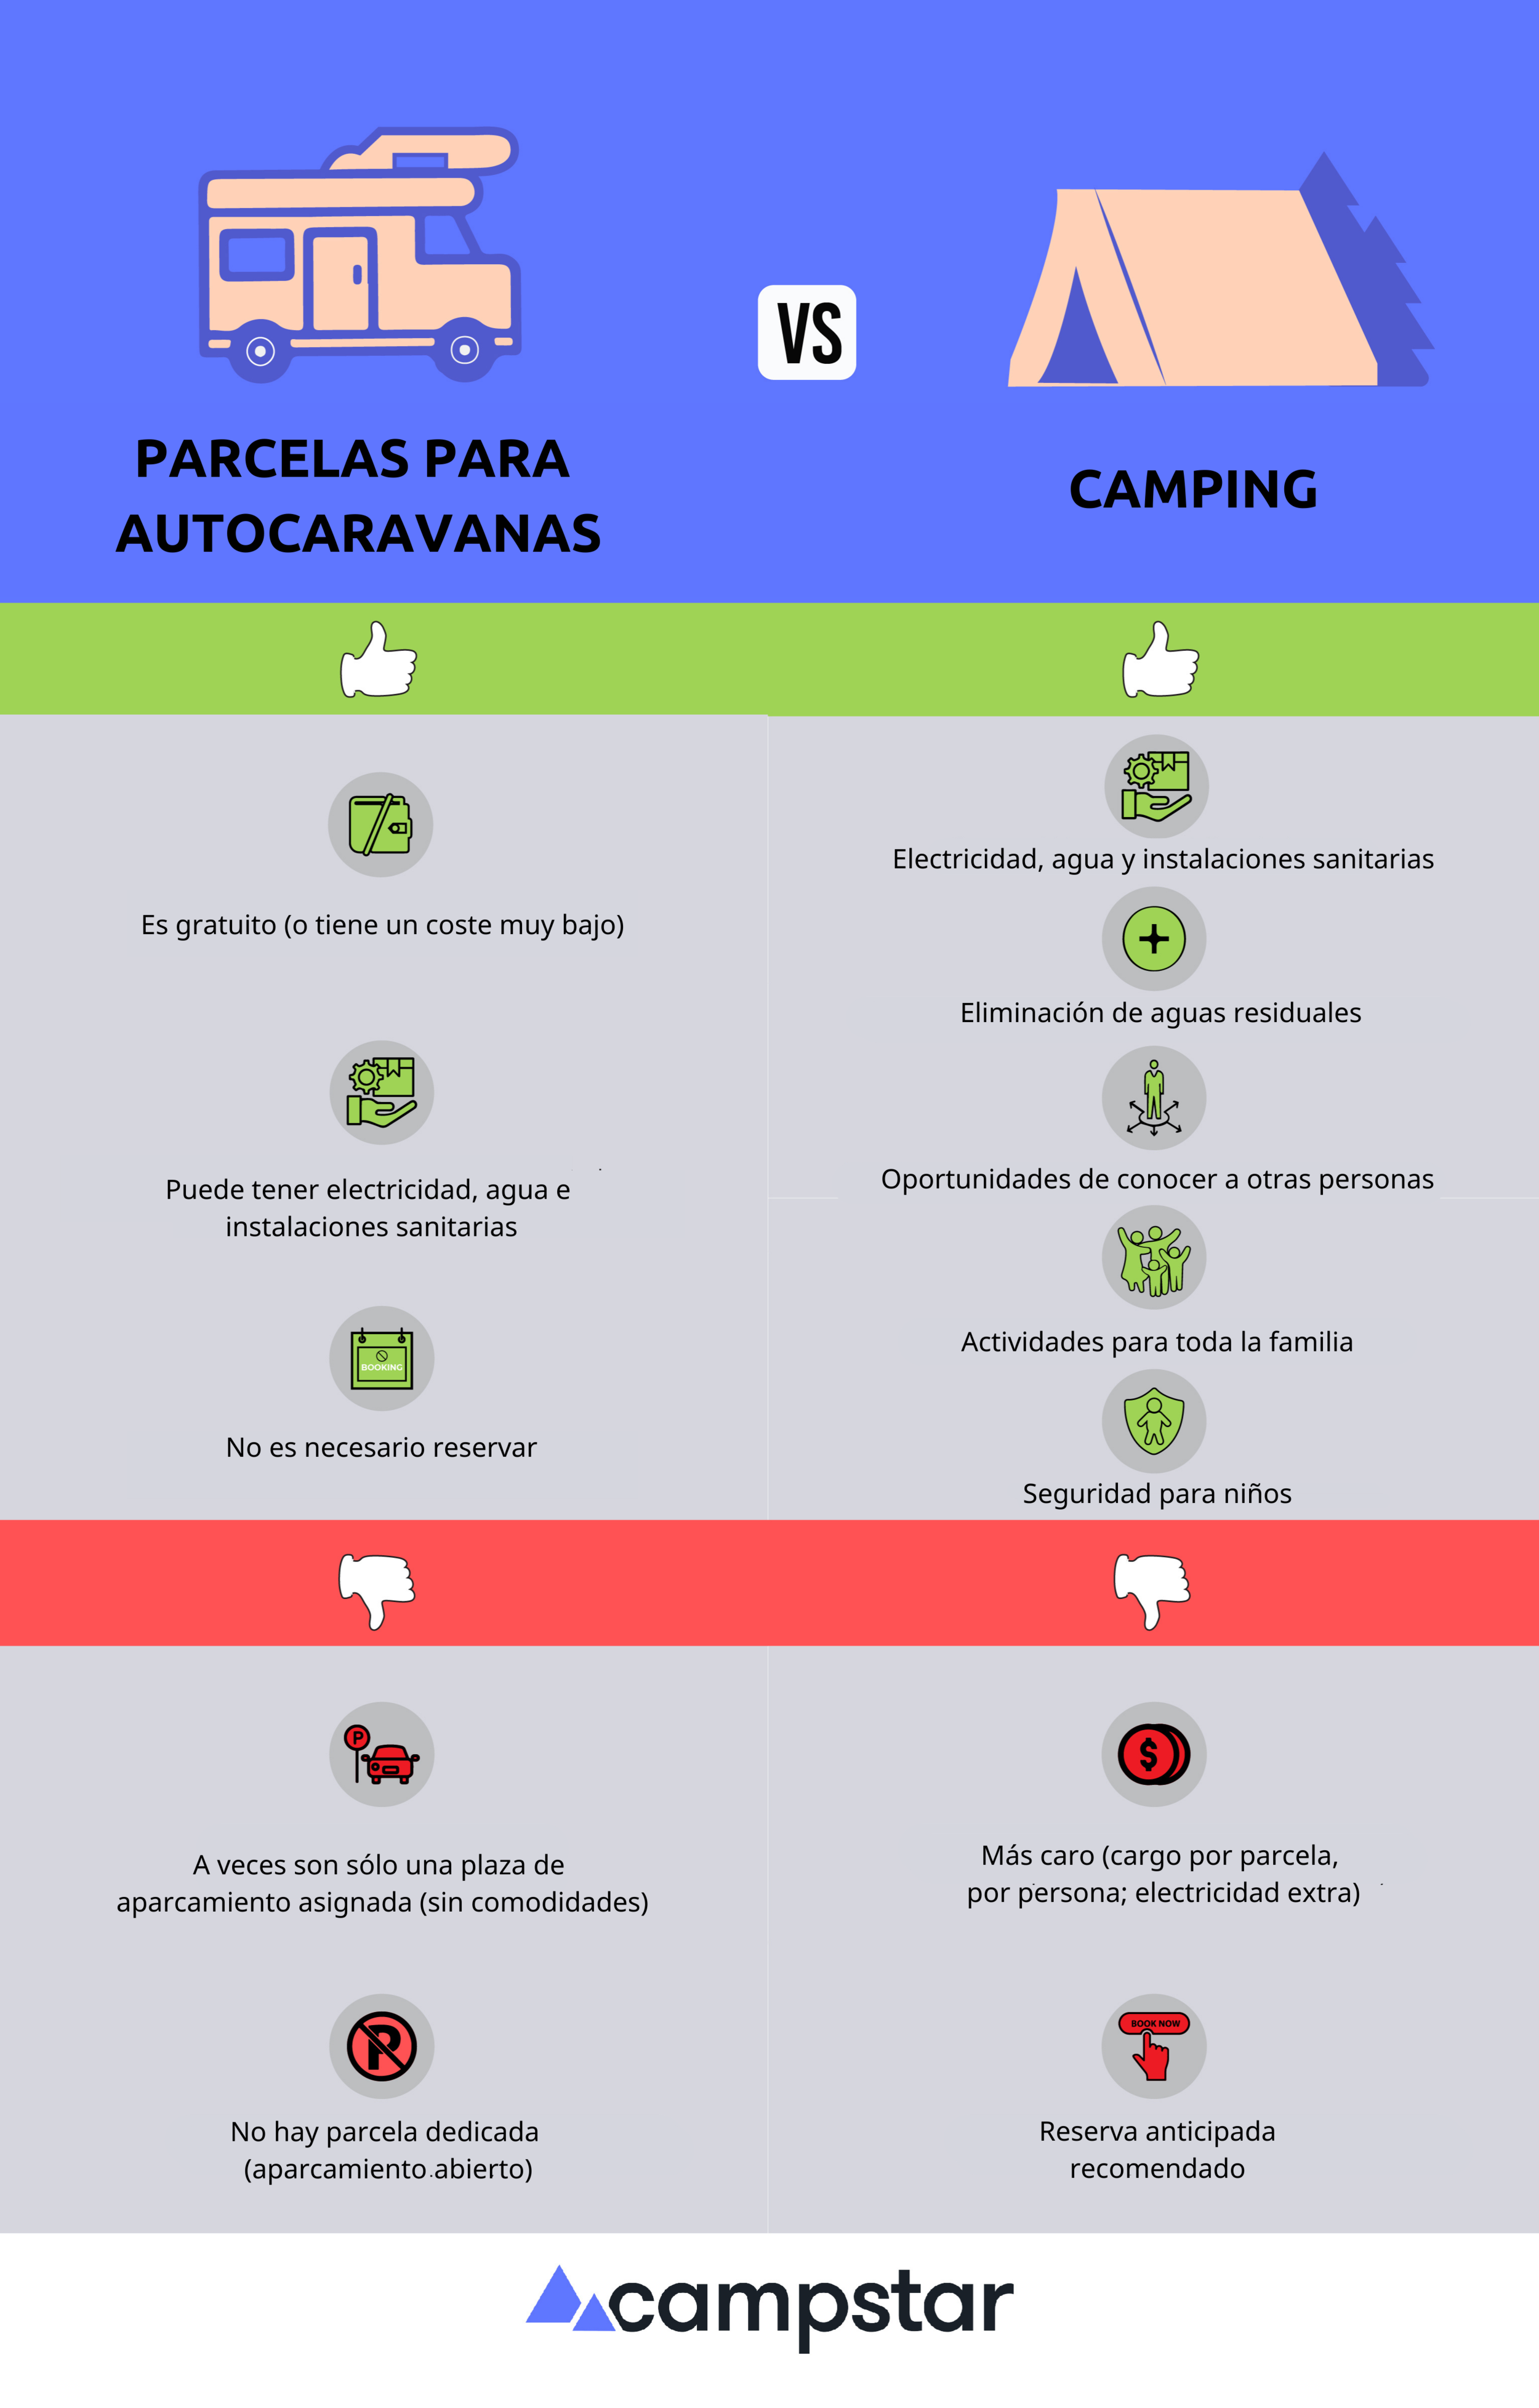 Parcelas para autocaravanas frente a camping: Ventajas y desventajas